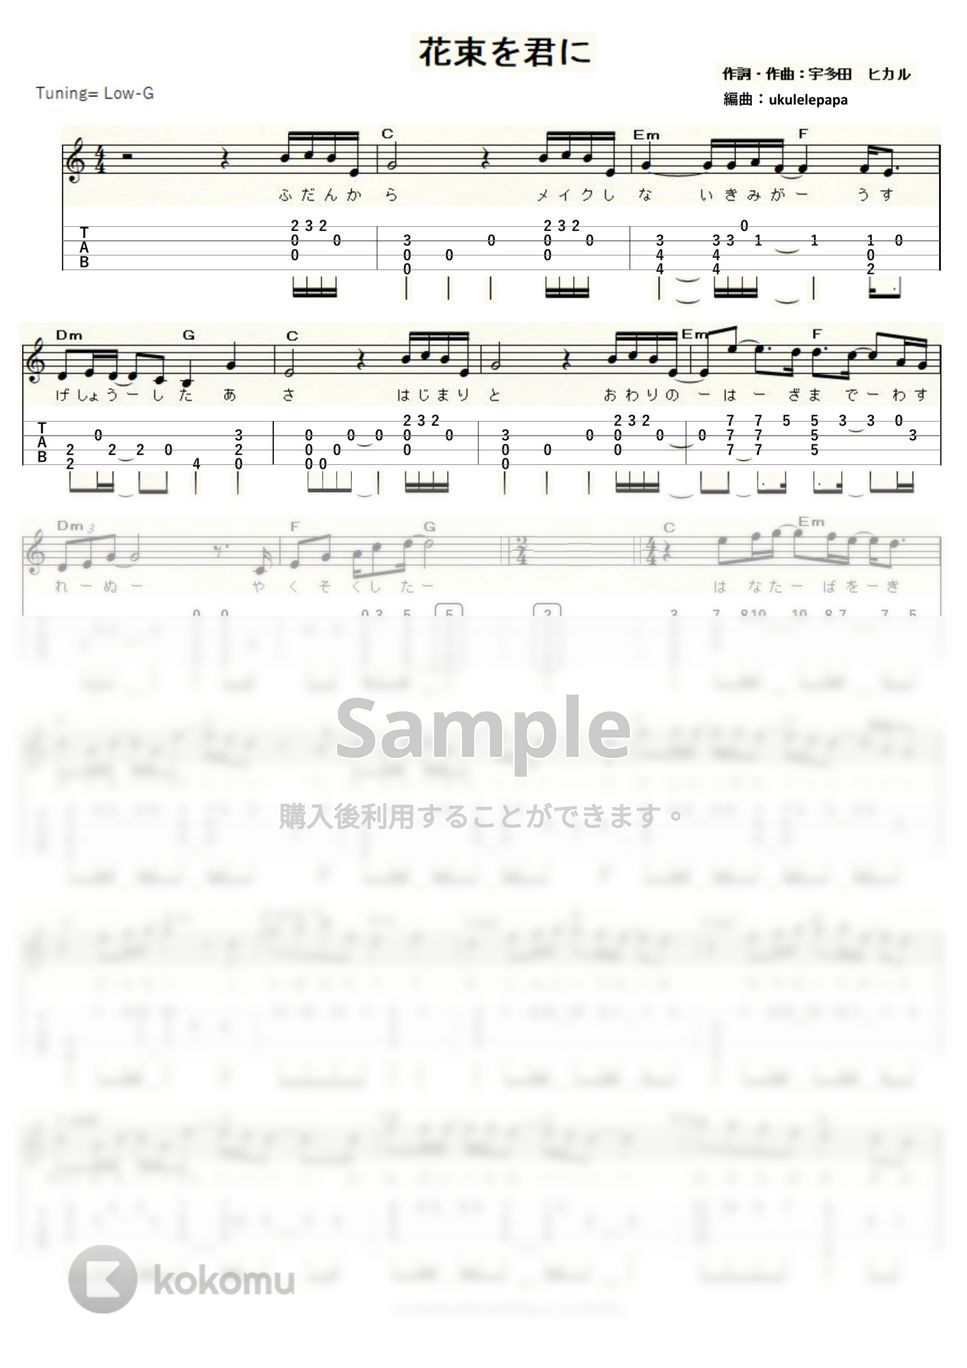 宇多田ヒカル - 花束を君に～NHK朝ドラ『とと姉ちゃん』主題歌～ (ｳｸﾚﾚｿﾛ / Low-G / 中級) by ukulelepapa